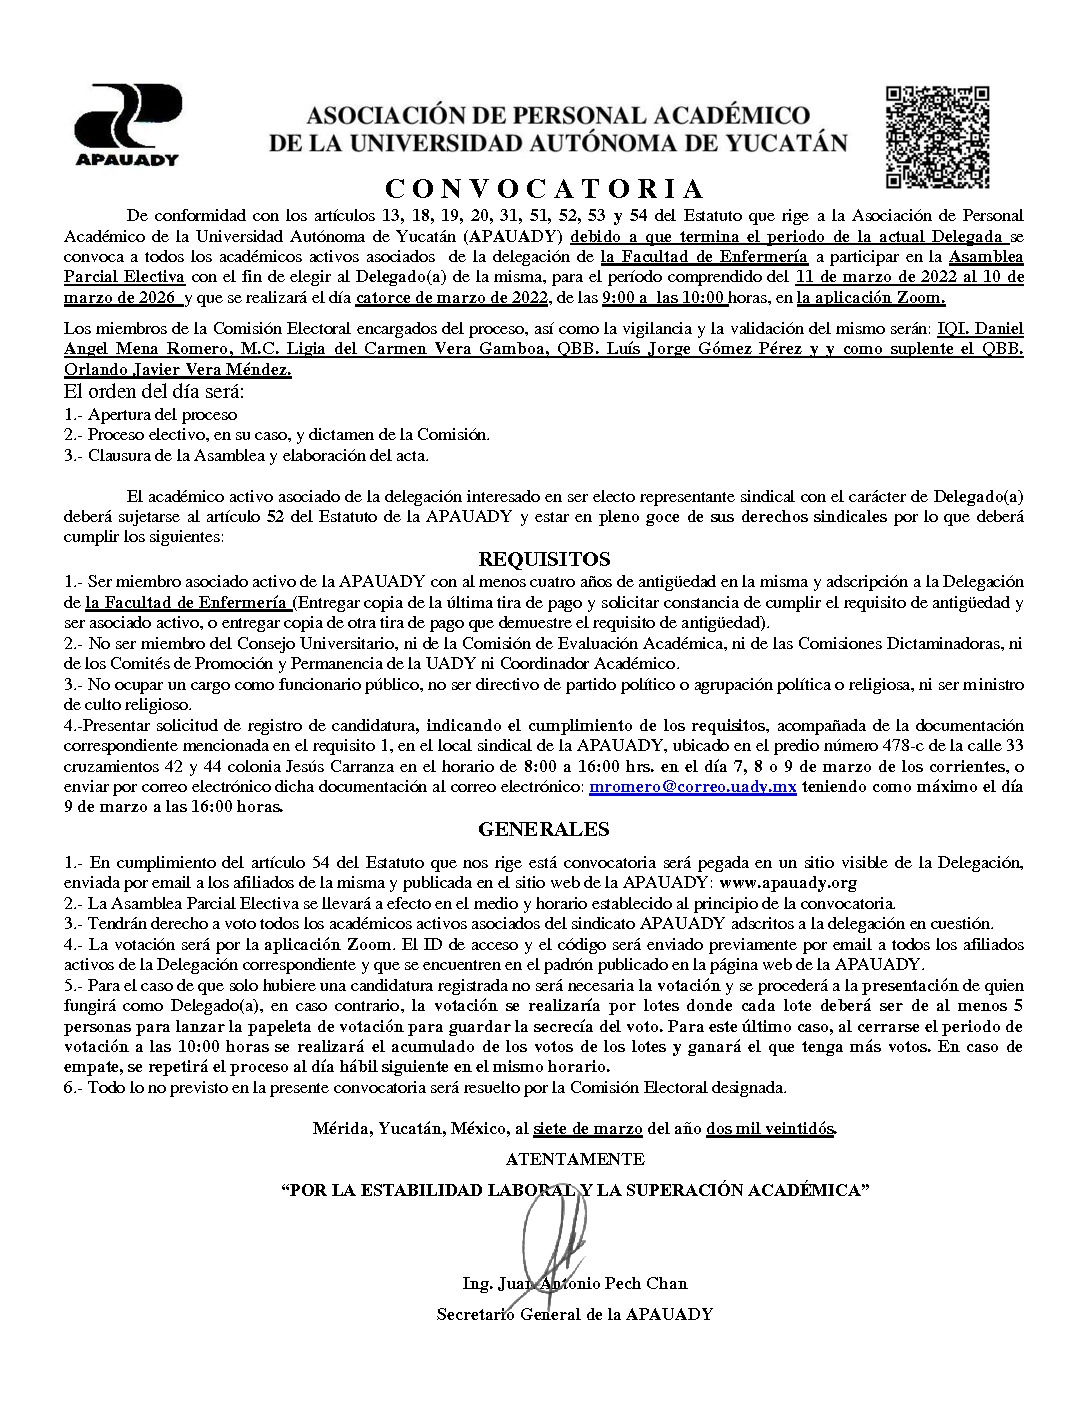 Featured image for “Convocatoria Asamblea Parcial Electiva | Facultad de Enfermería | 14 marzo 2022 | 9:00-10:00”